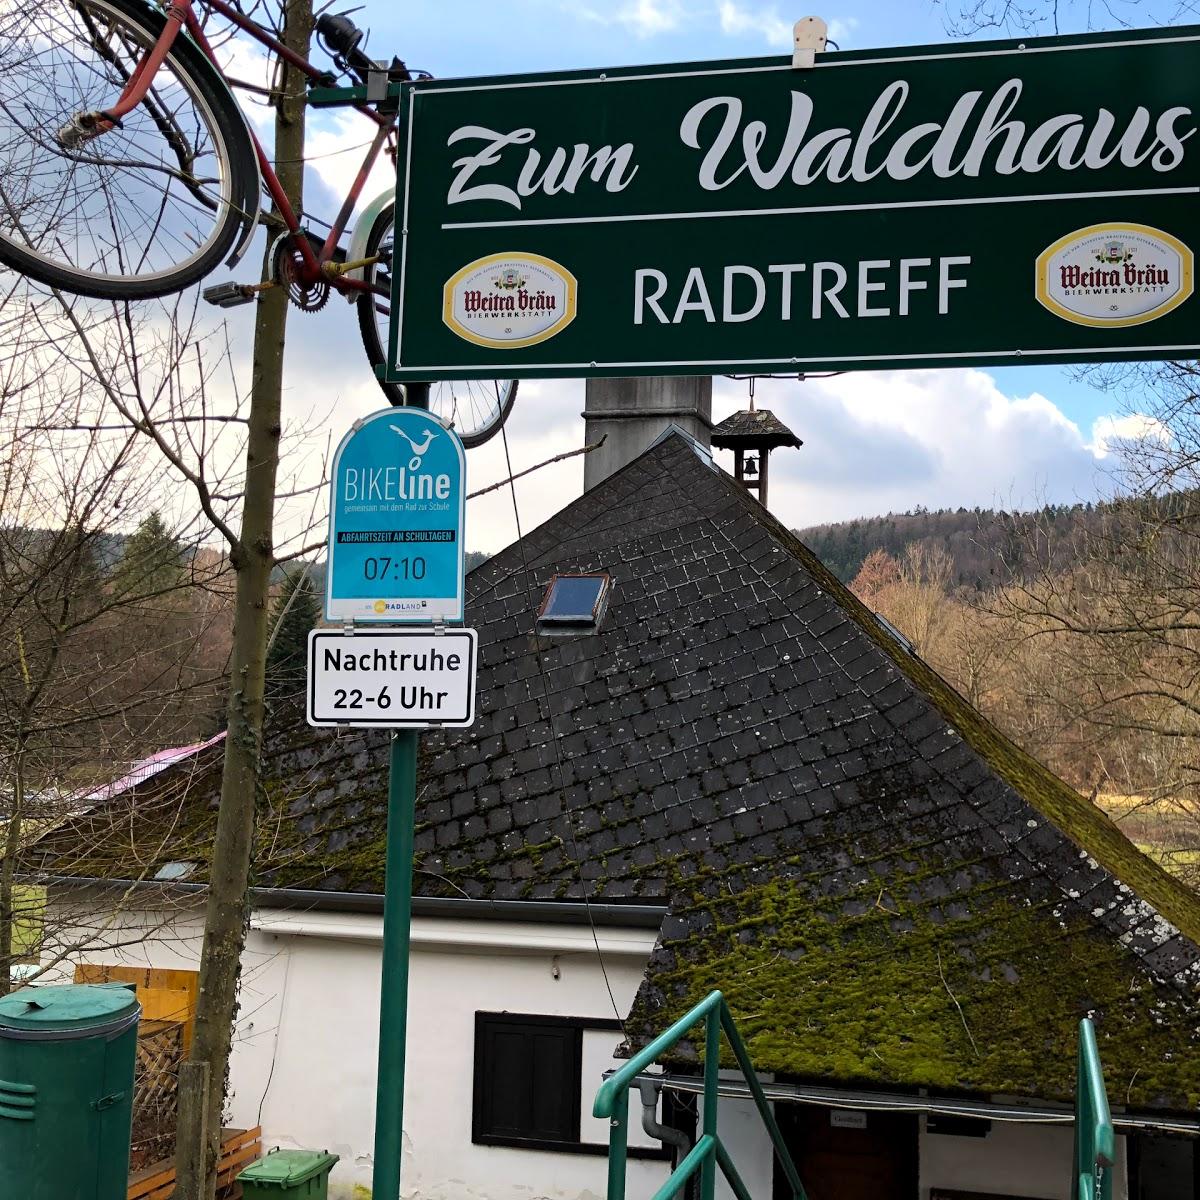 Restaurant "Zum Waldhaus" in Seebenstein